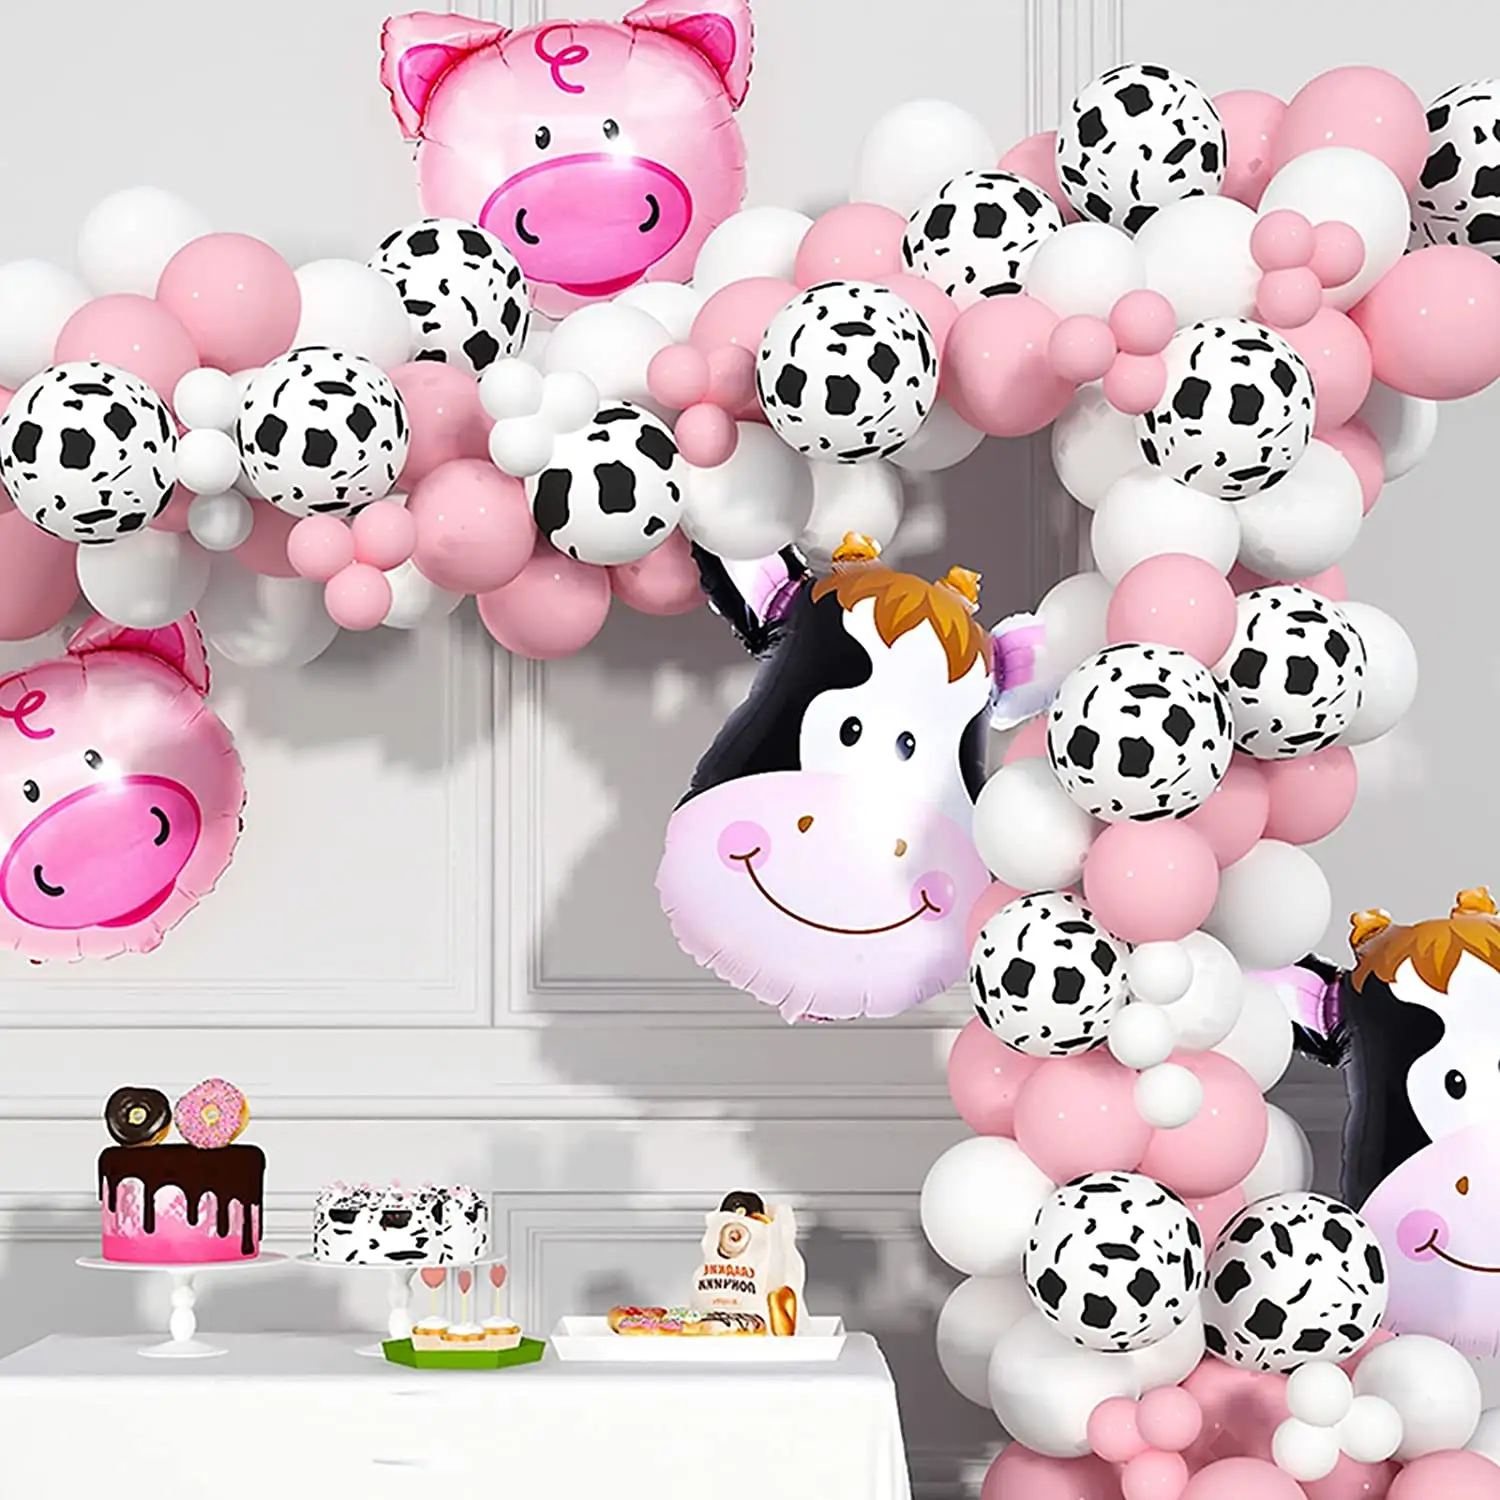 Commercio all'ingrosso della mucca decorazioni del partito della fattoria animale palloncino della ghirlanda Kit con stampa della mucca palloncini per le ragazze forniture per feste di compleanno